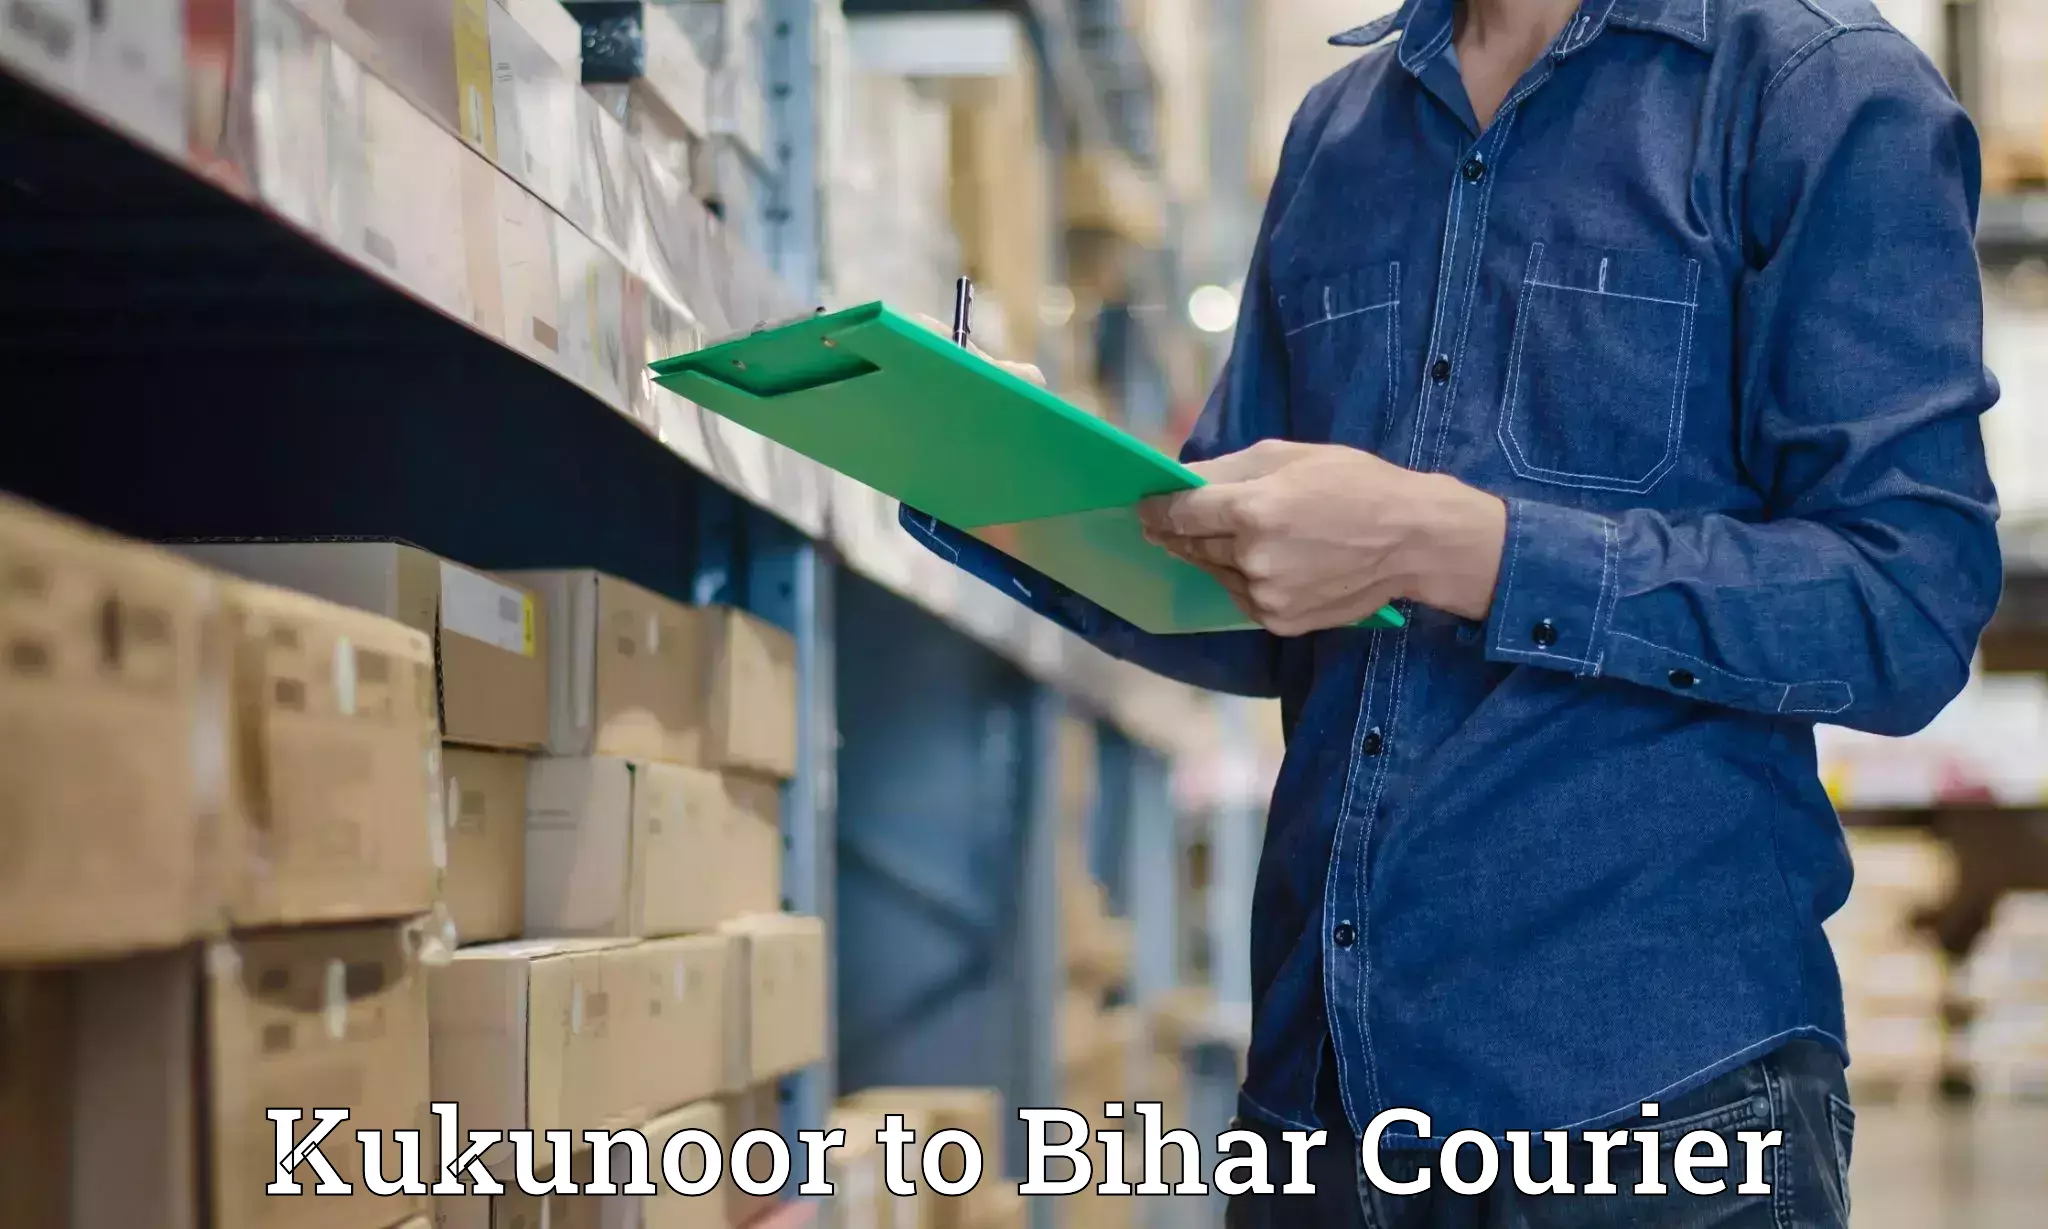 Next-generation courier services Kukunoor to Kamtaul